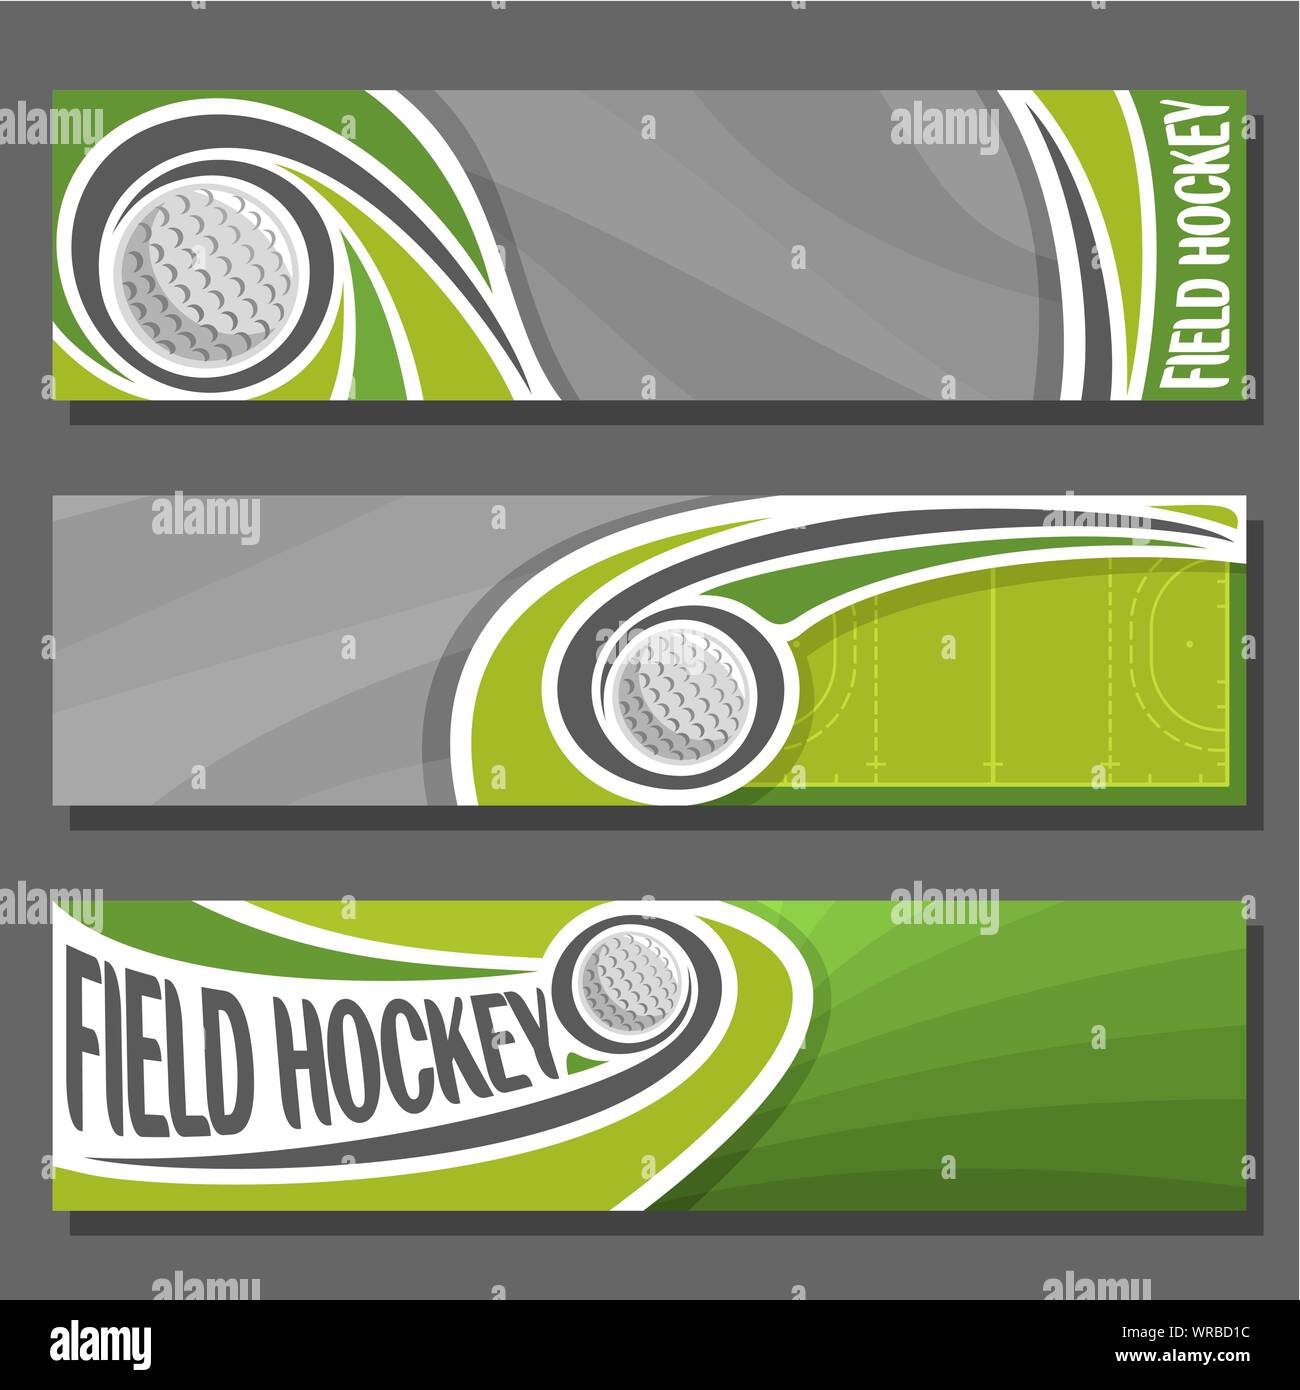 Les bannières horizontales de vecteur pour le hockey : 3 cartoon couvre de texte sur le thème du hockey, sport court avec le vol sur trajectoire ball, résumé général Illustration de Vecteur